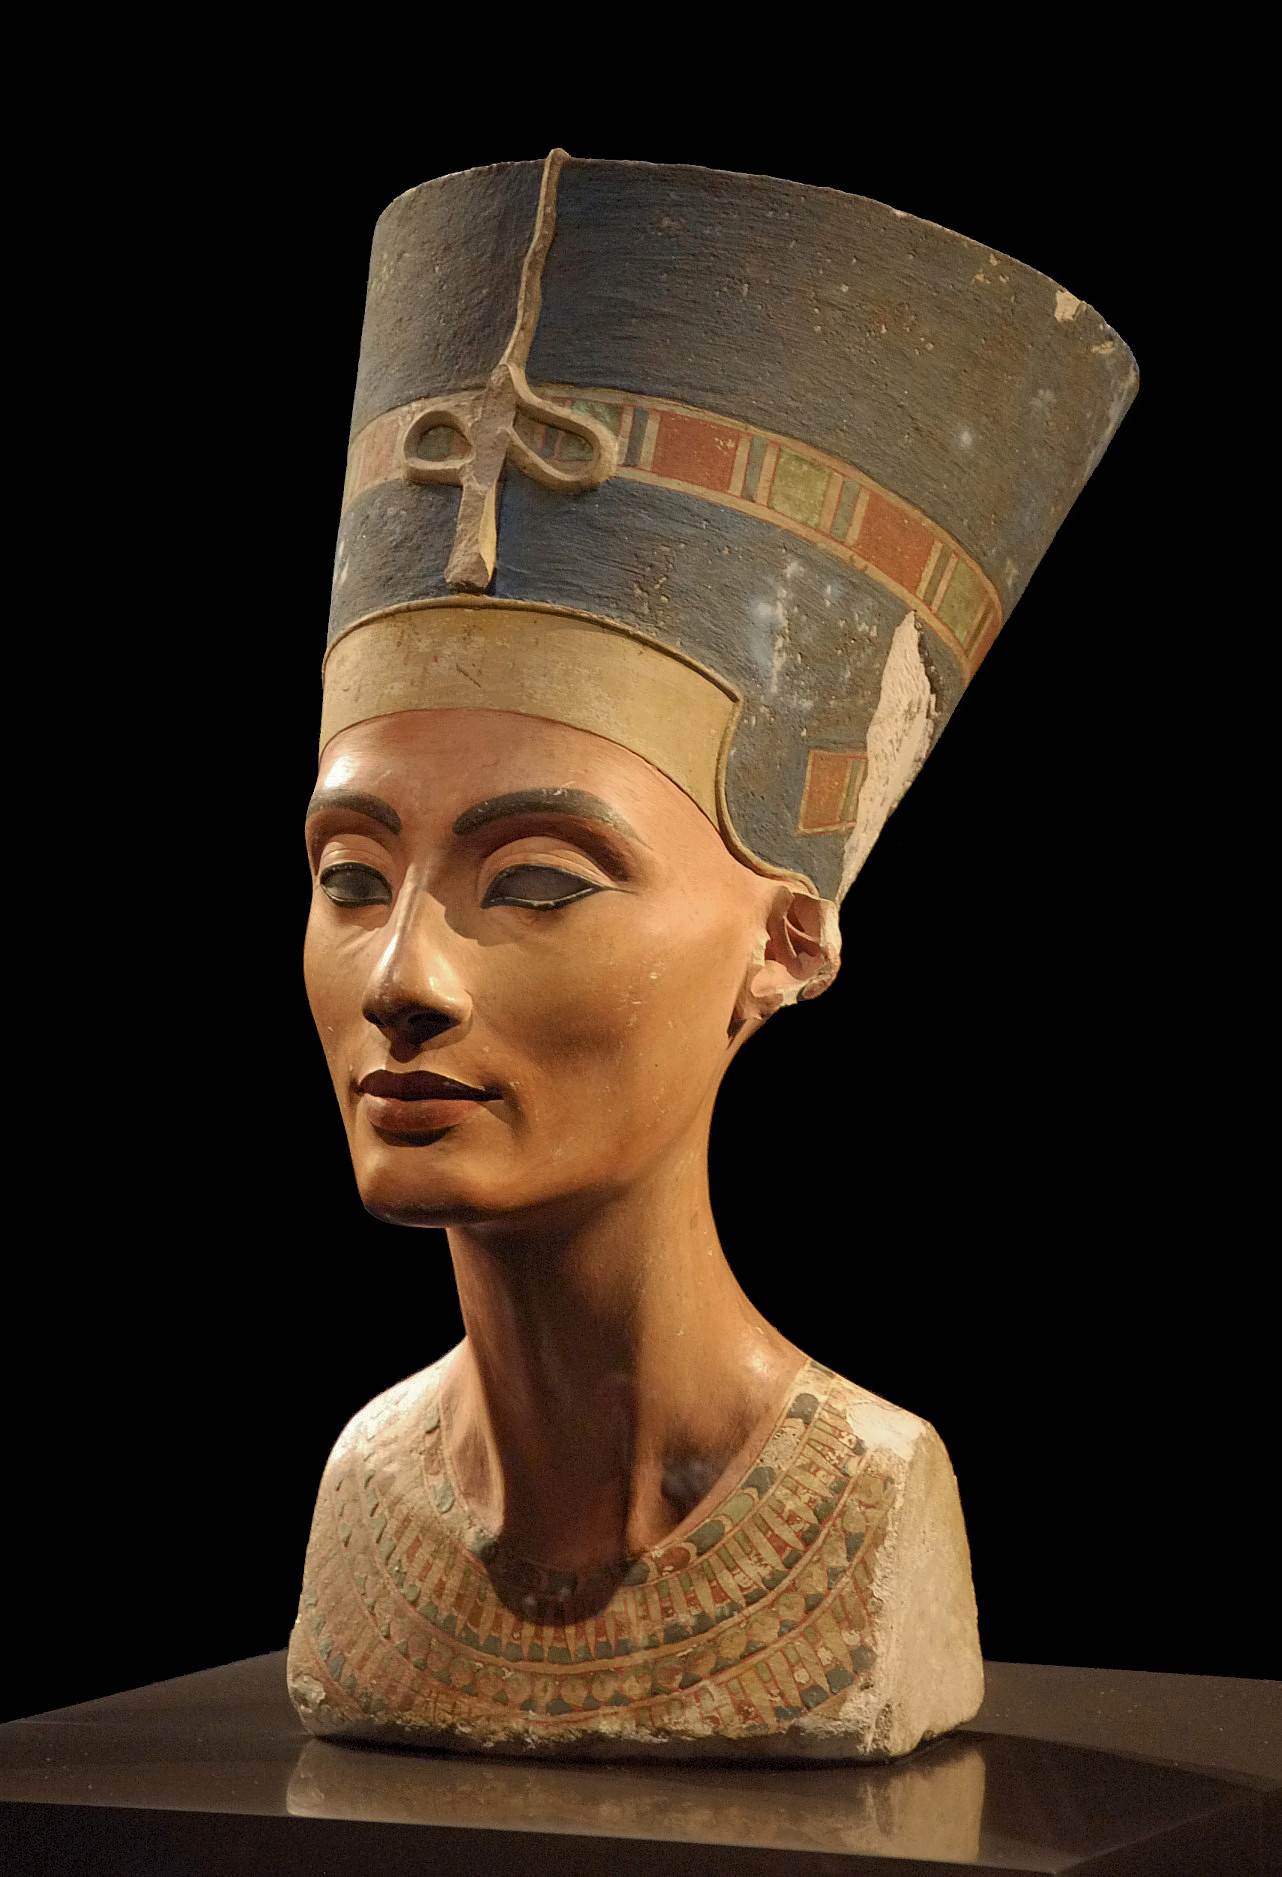 Obrázek poprsí Nefertiti, objevený v hlavním městě Achnatonu Amarna 6. prosince 1912. Poprsí je v berlínském Muzeu Neues.